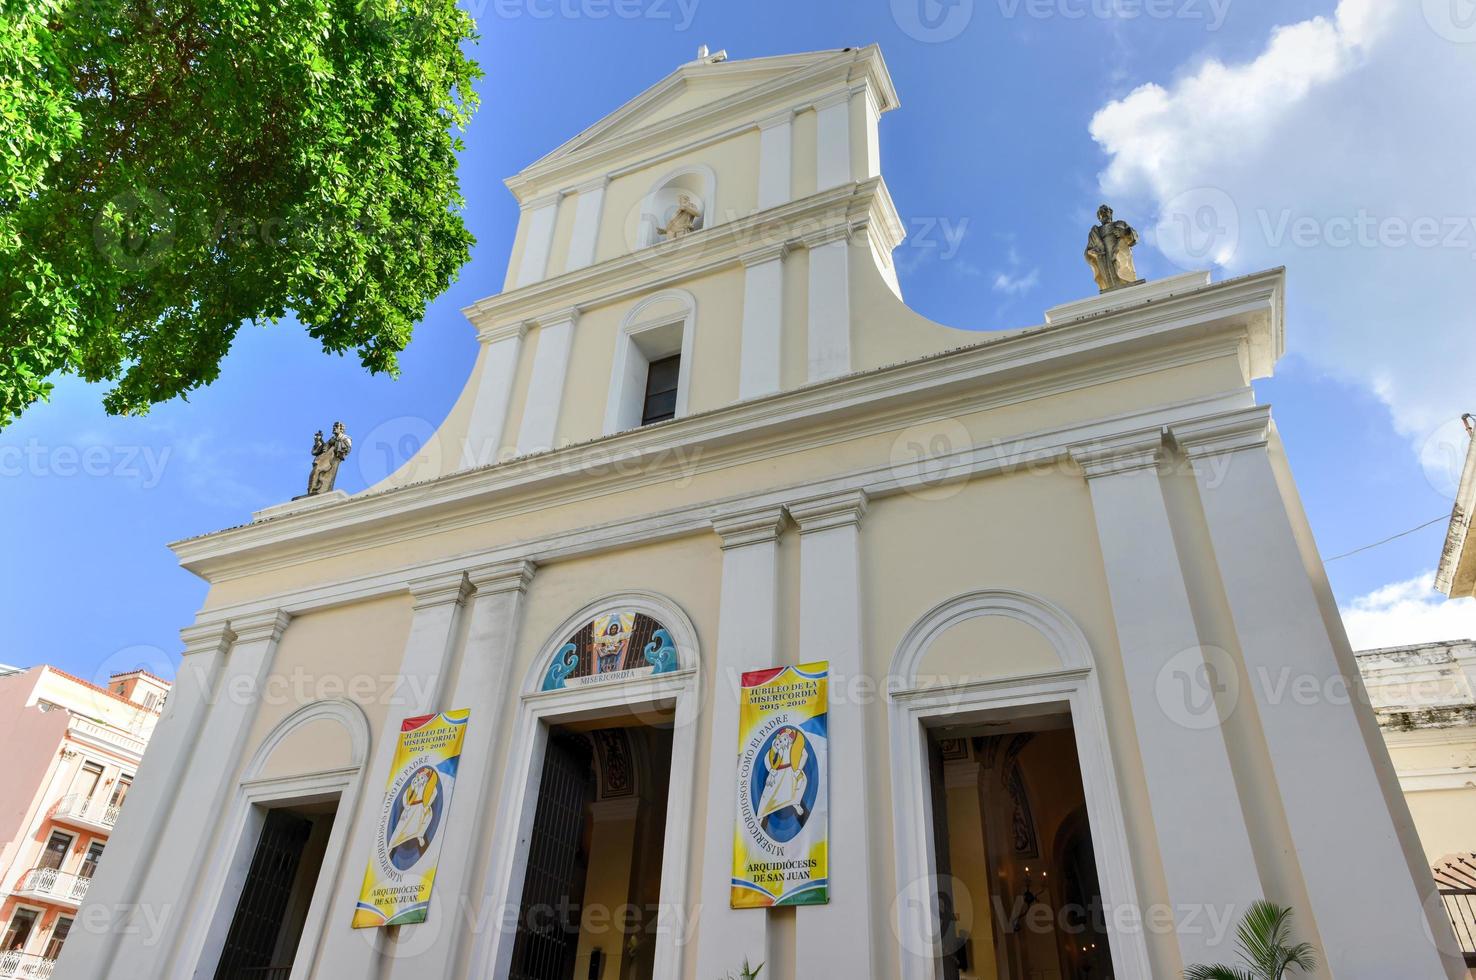 La cathédrale de san juan bautista est une cathédrale catholique romaine située dans le vieux san juan, à porto rico. cette église est construite en 1521 et est la plus ancienne église des états-unis. photo